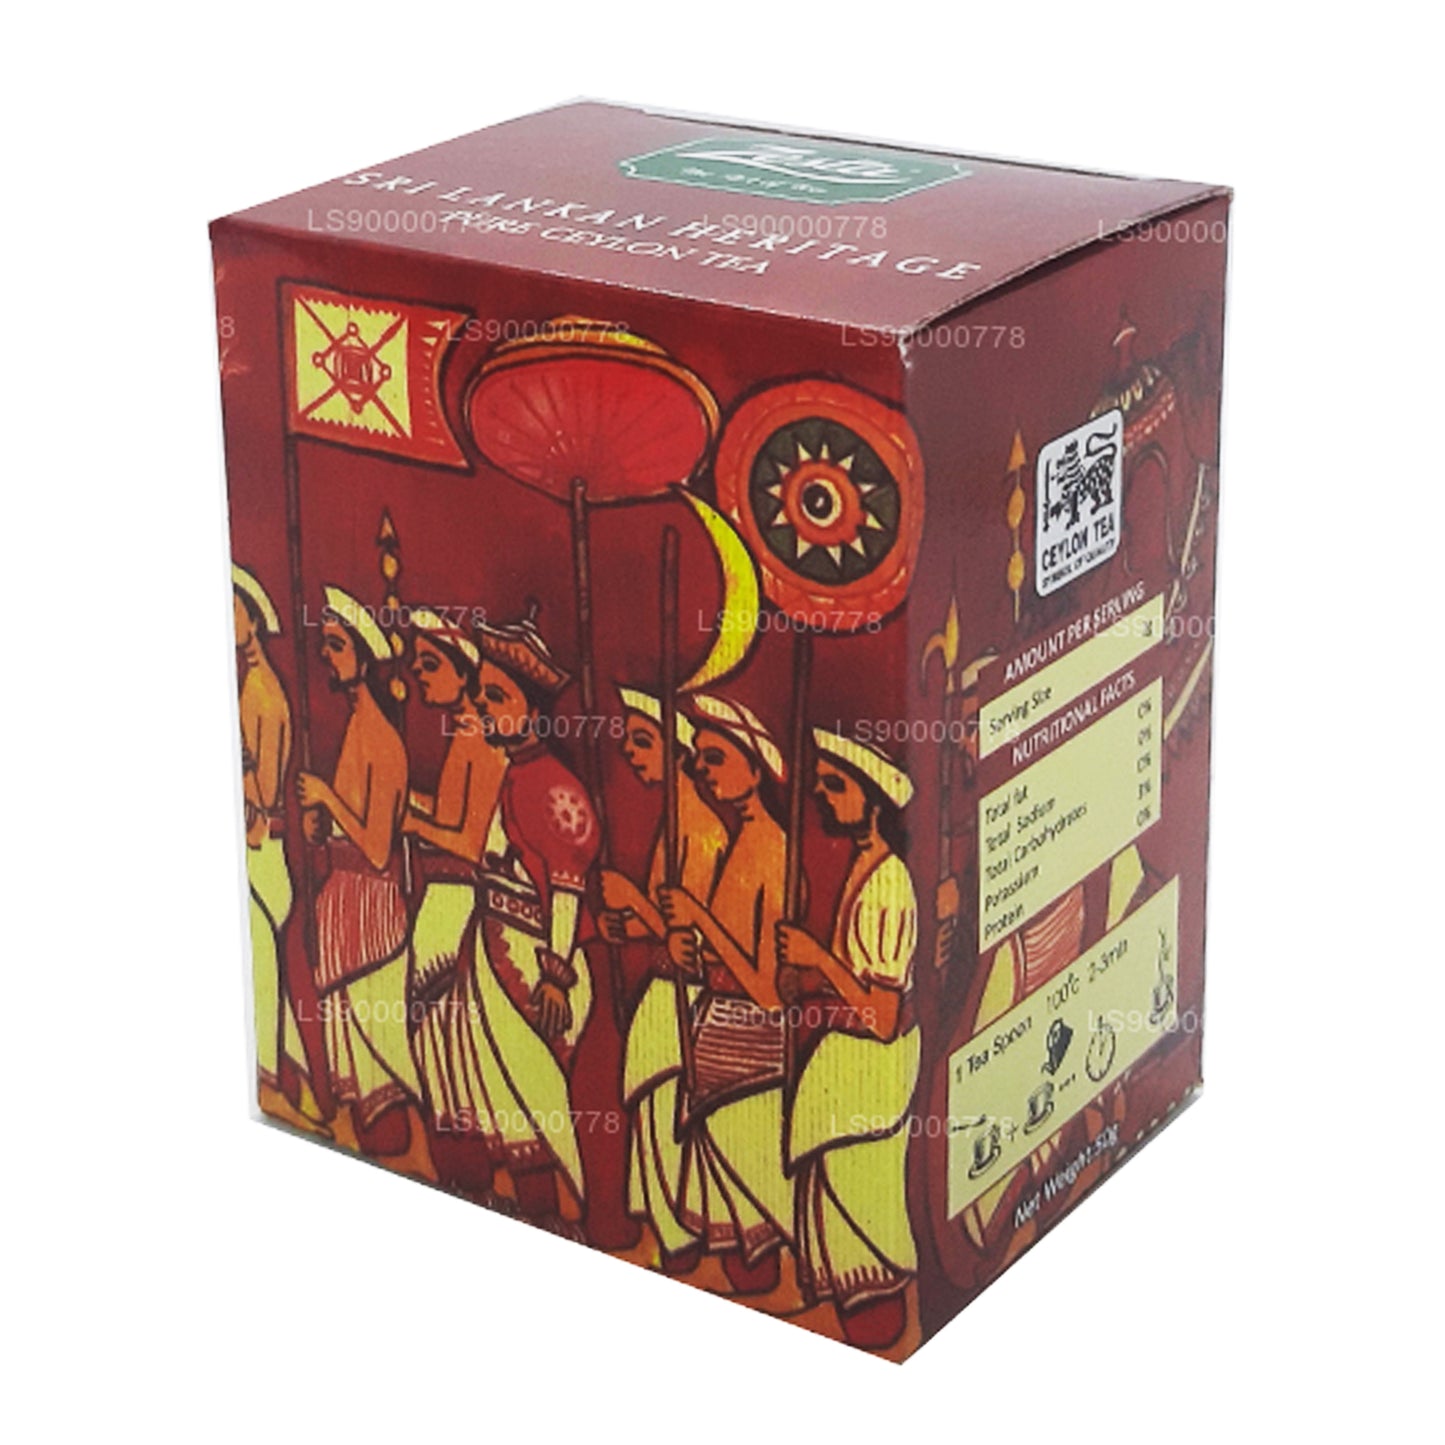 Zesta Sri Lankan Heritage Czysta herbata cejlońska Kenilworth PEKOE 1 (100g)